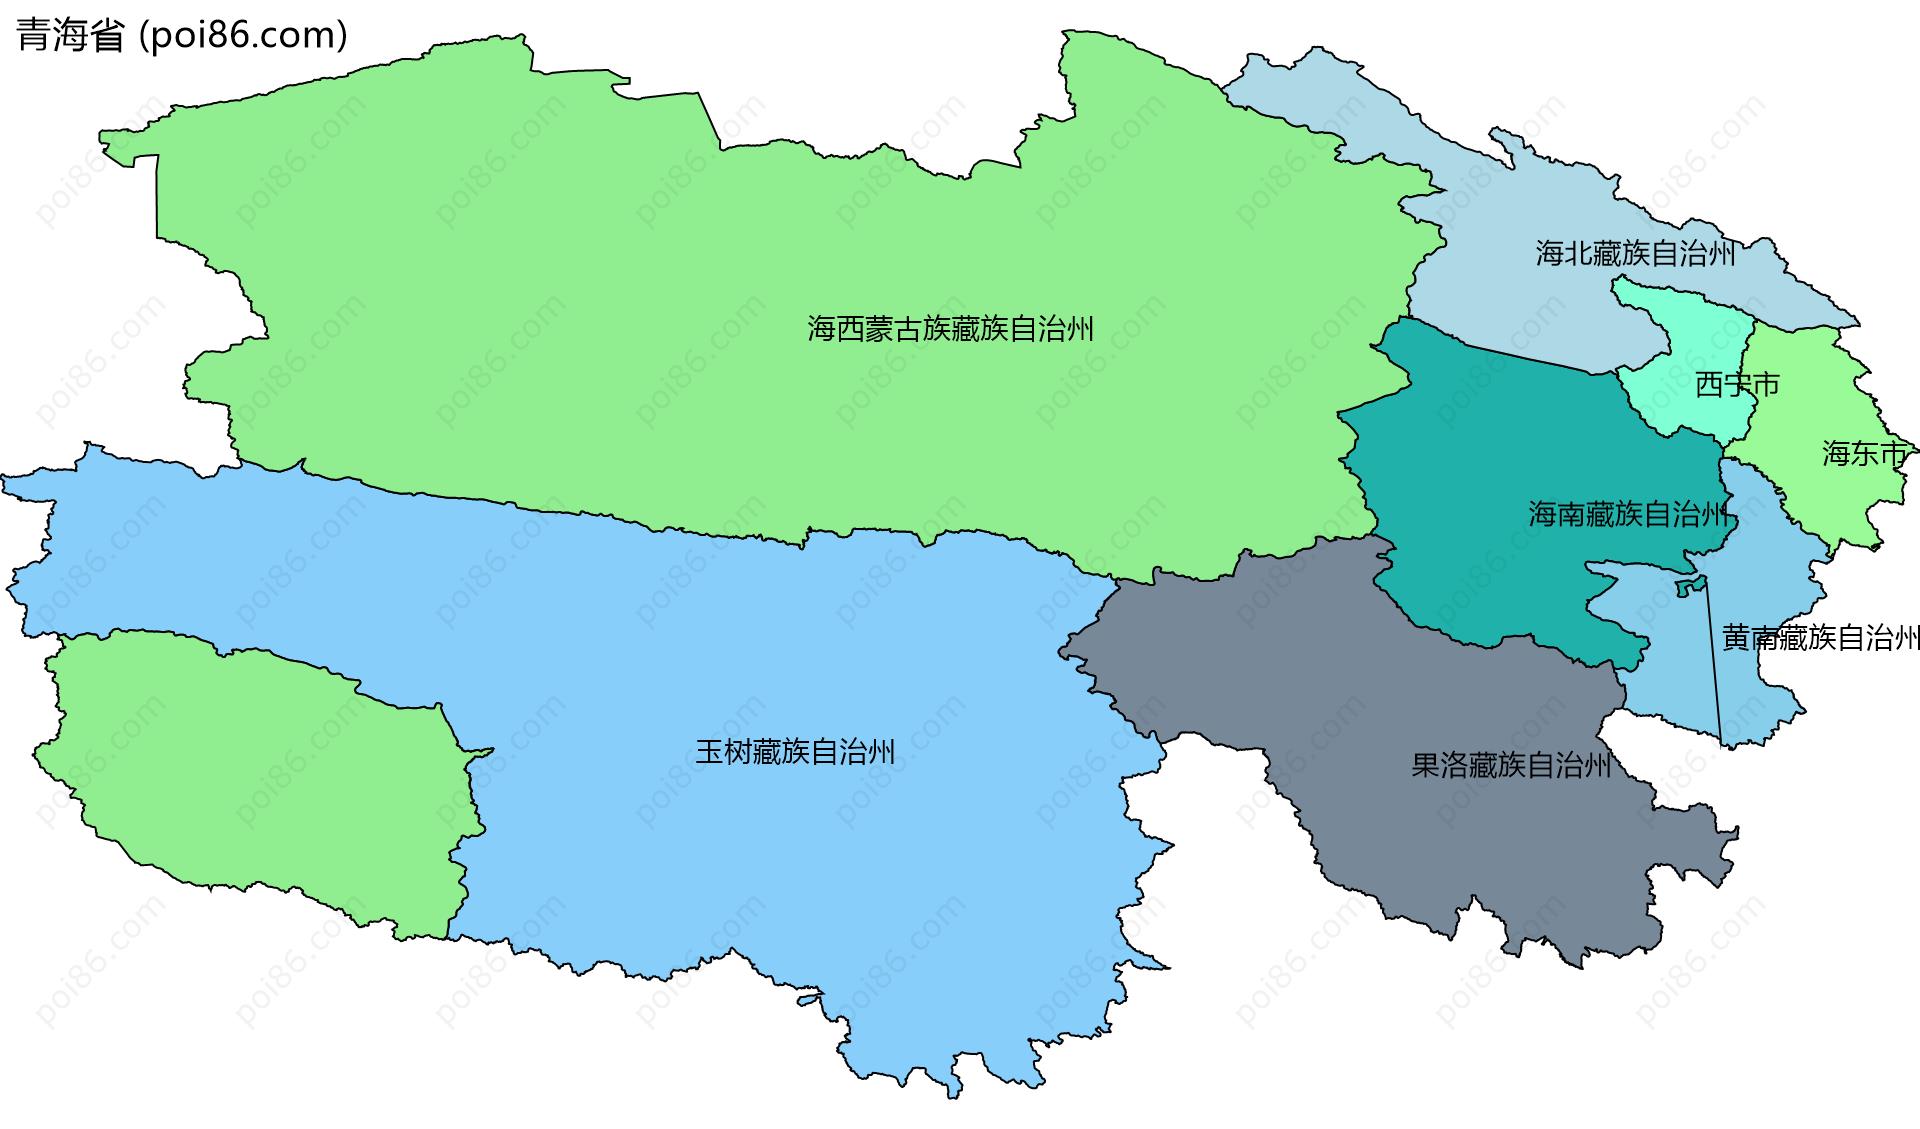 青海省边界地图